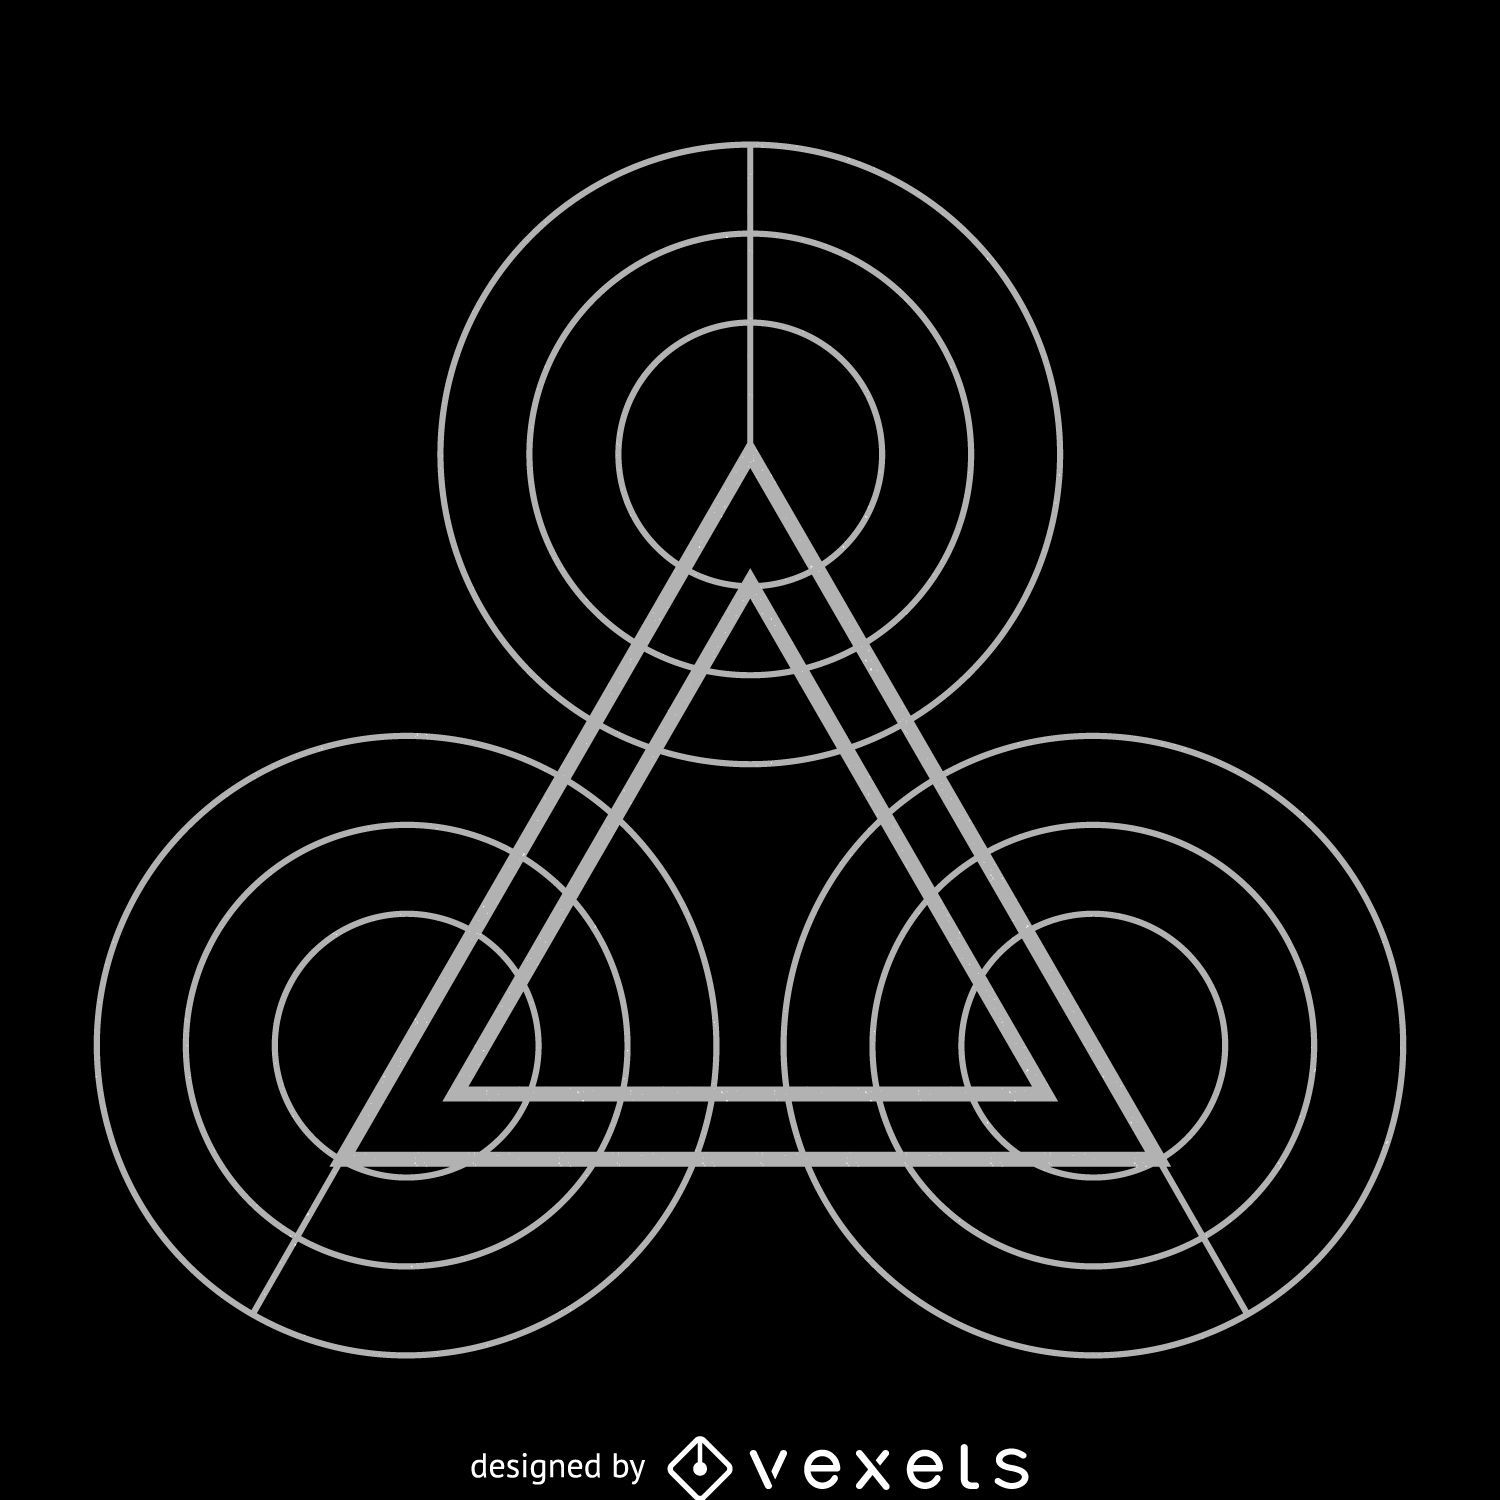 Círculos y triángulos geometría sagrada